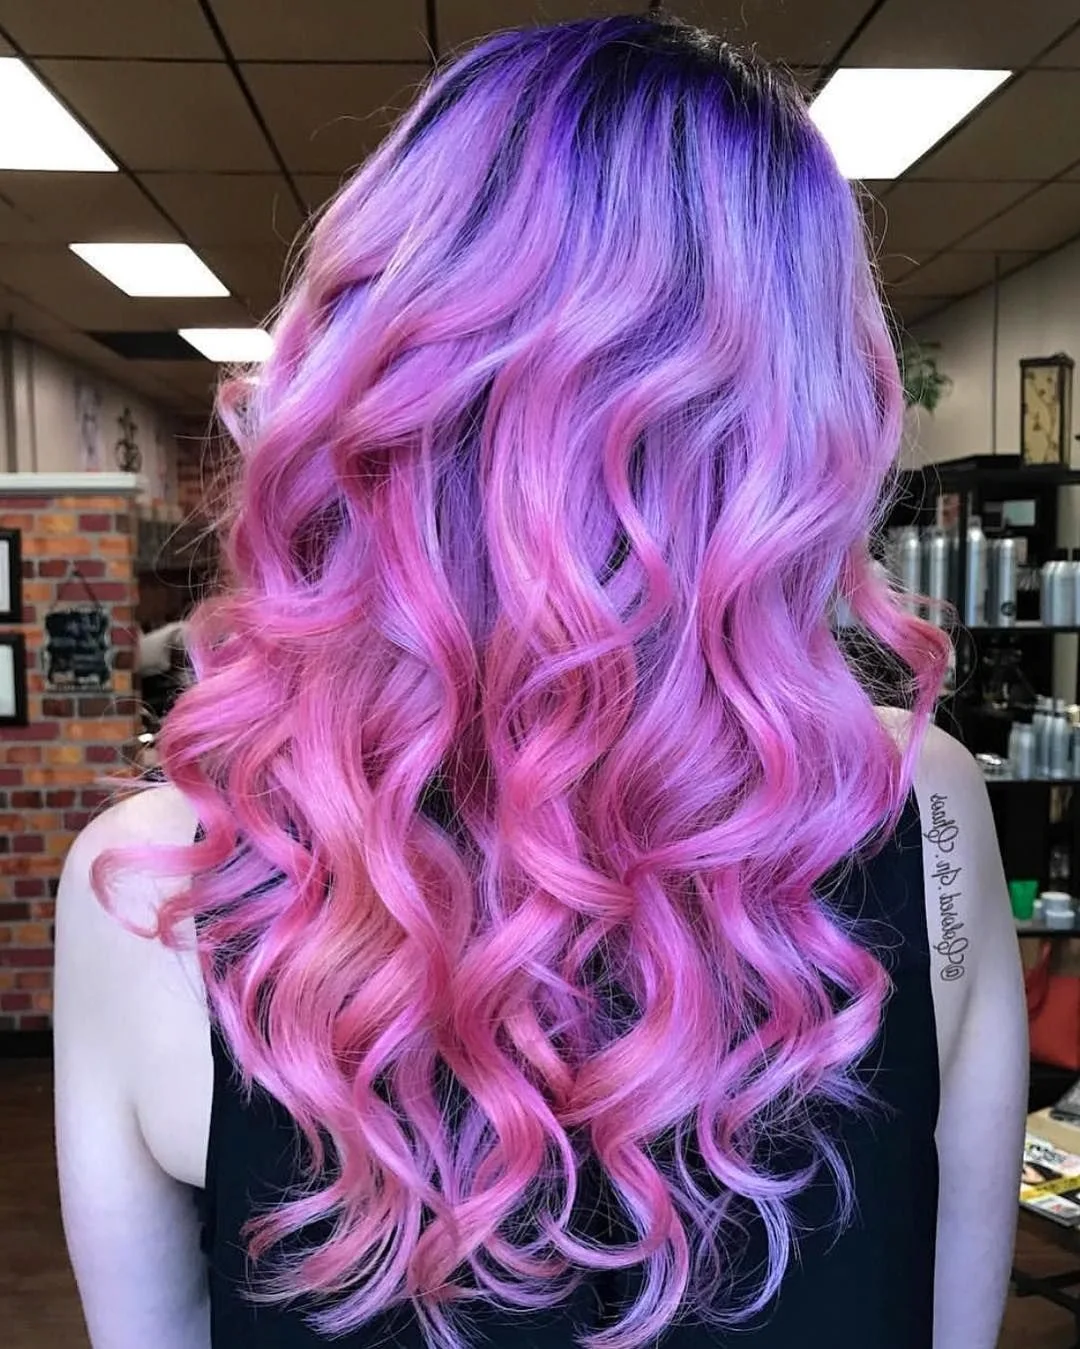 Окрашивание волос в розовый и фиолетовый